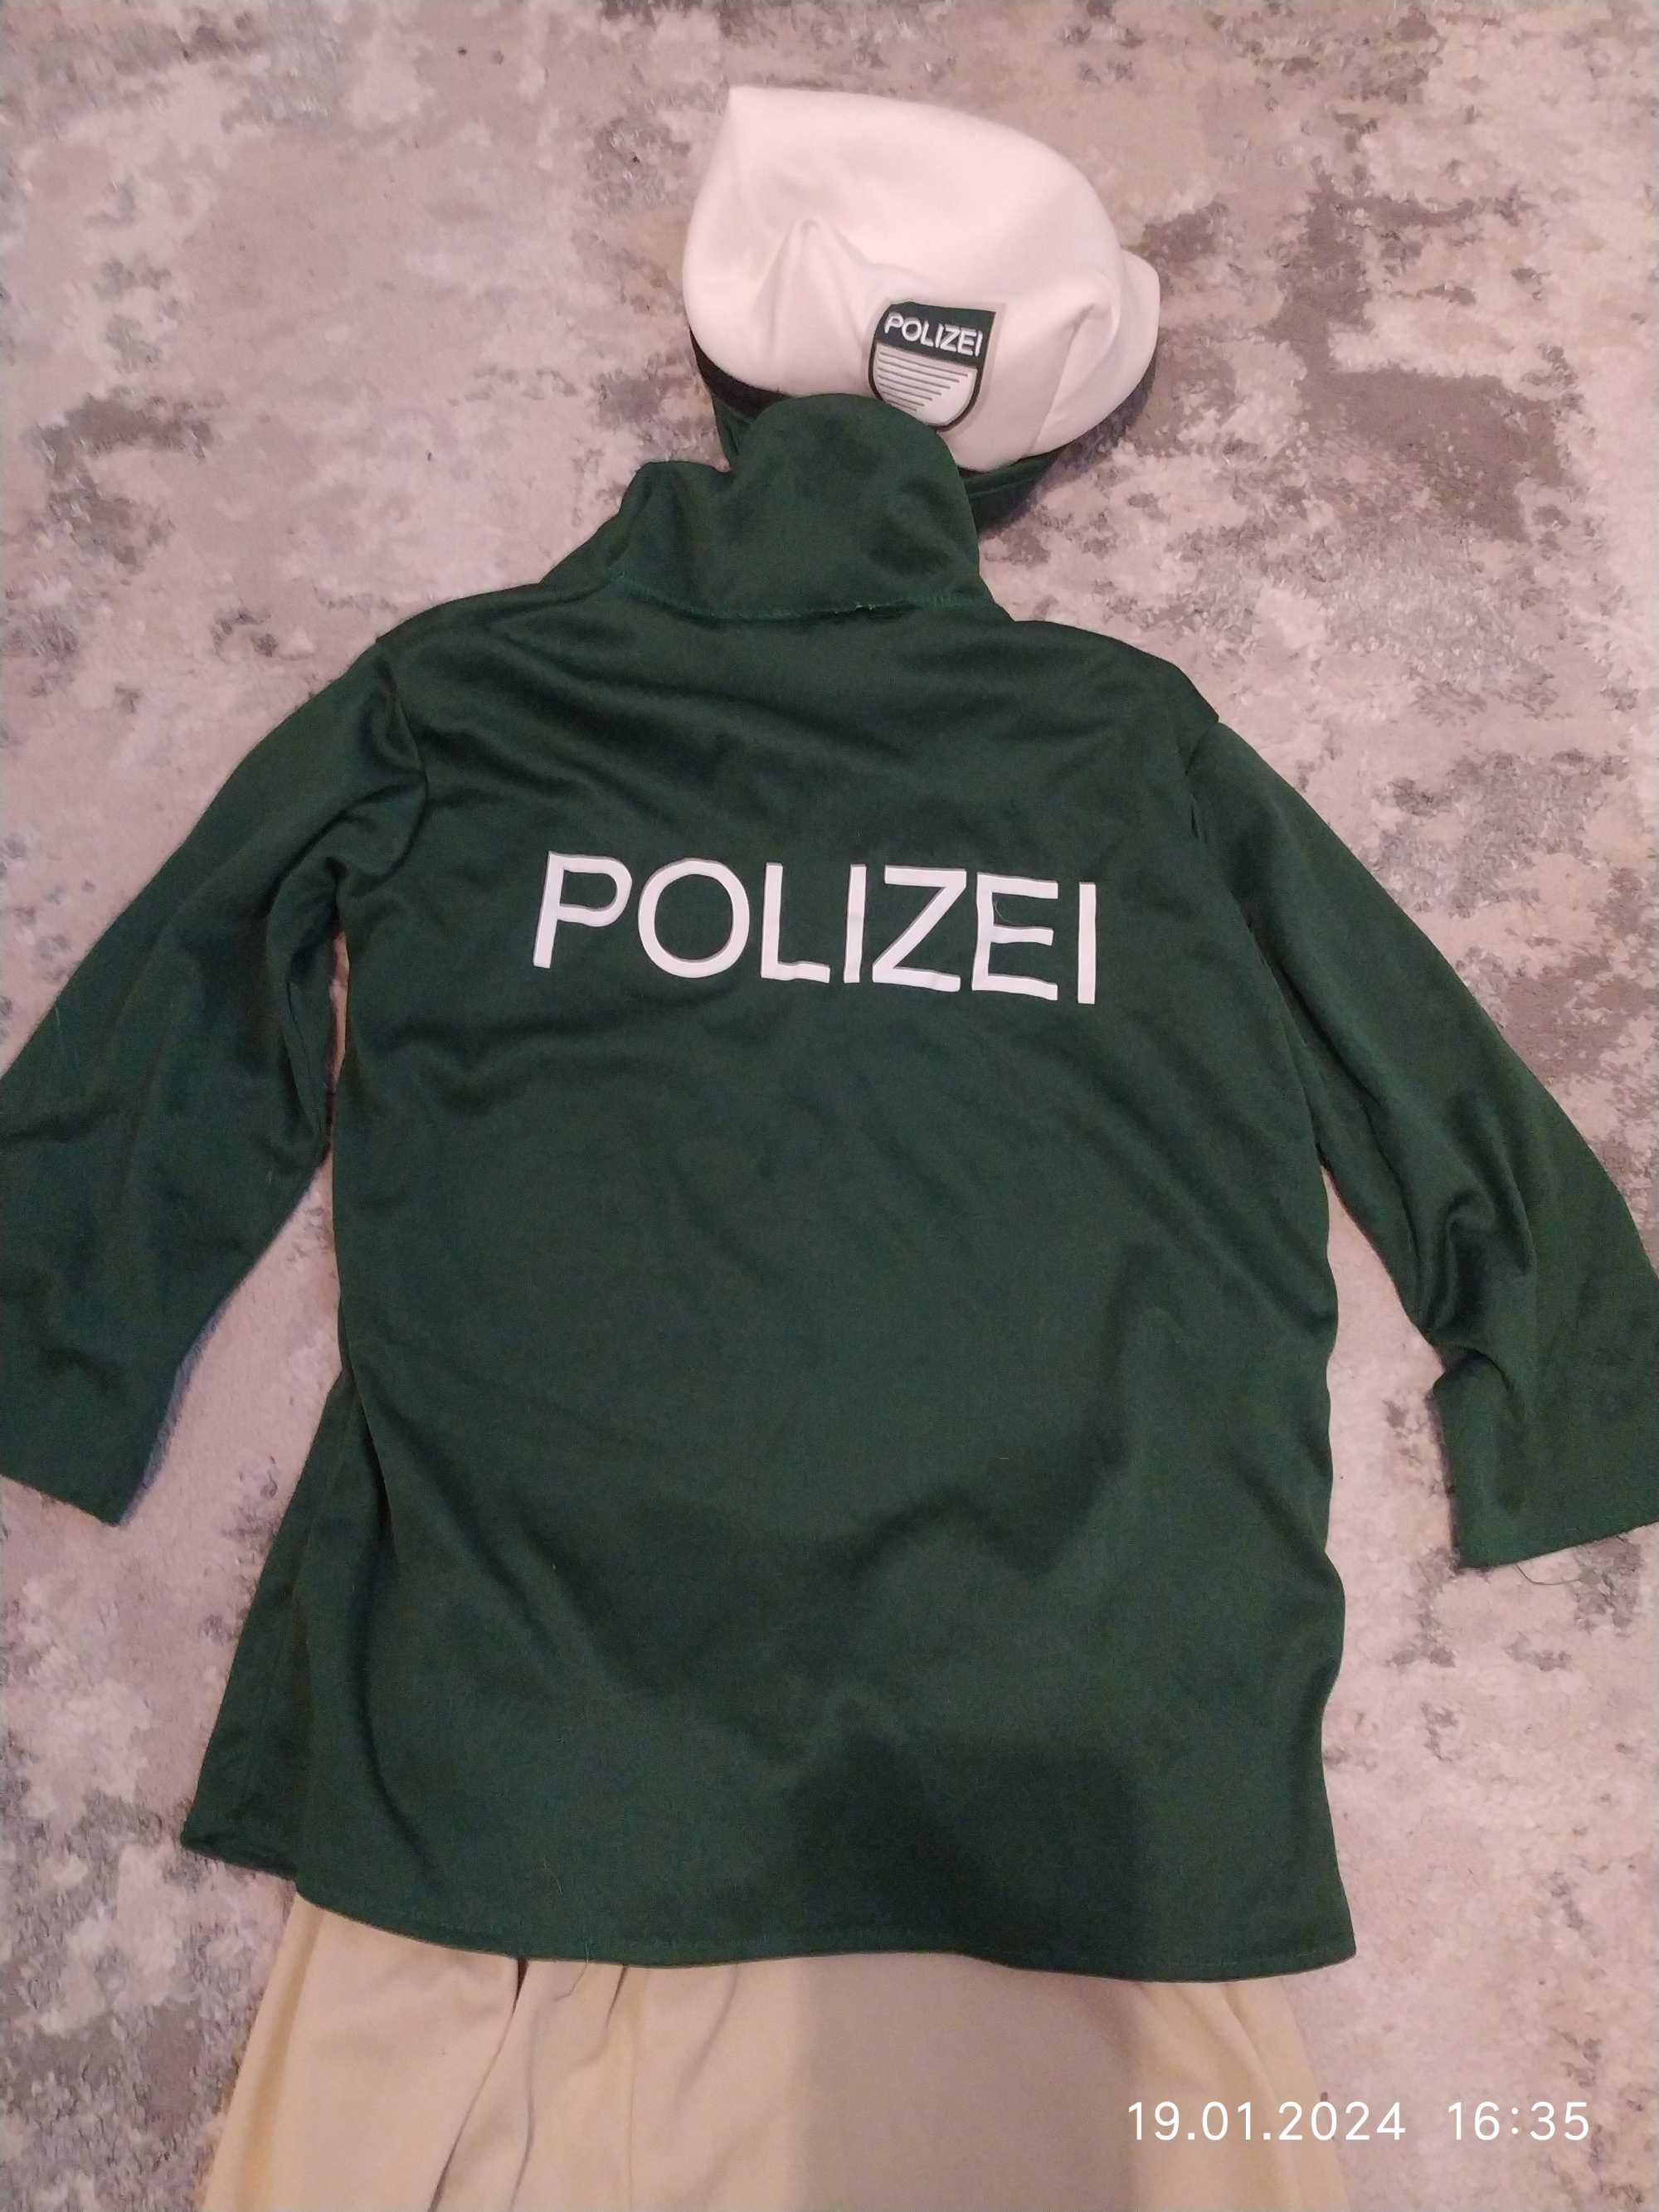 Policjant niemiecki przebranie kostium strój balik 4/6 lat